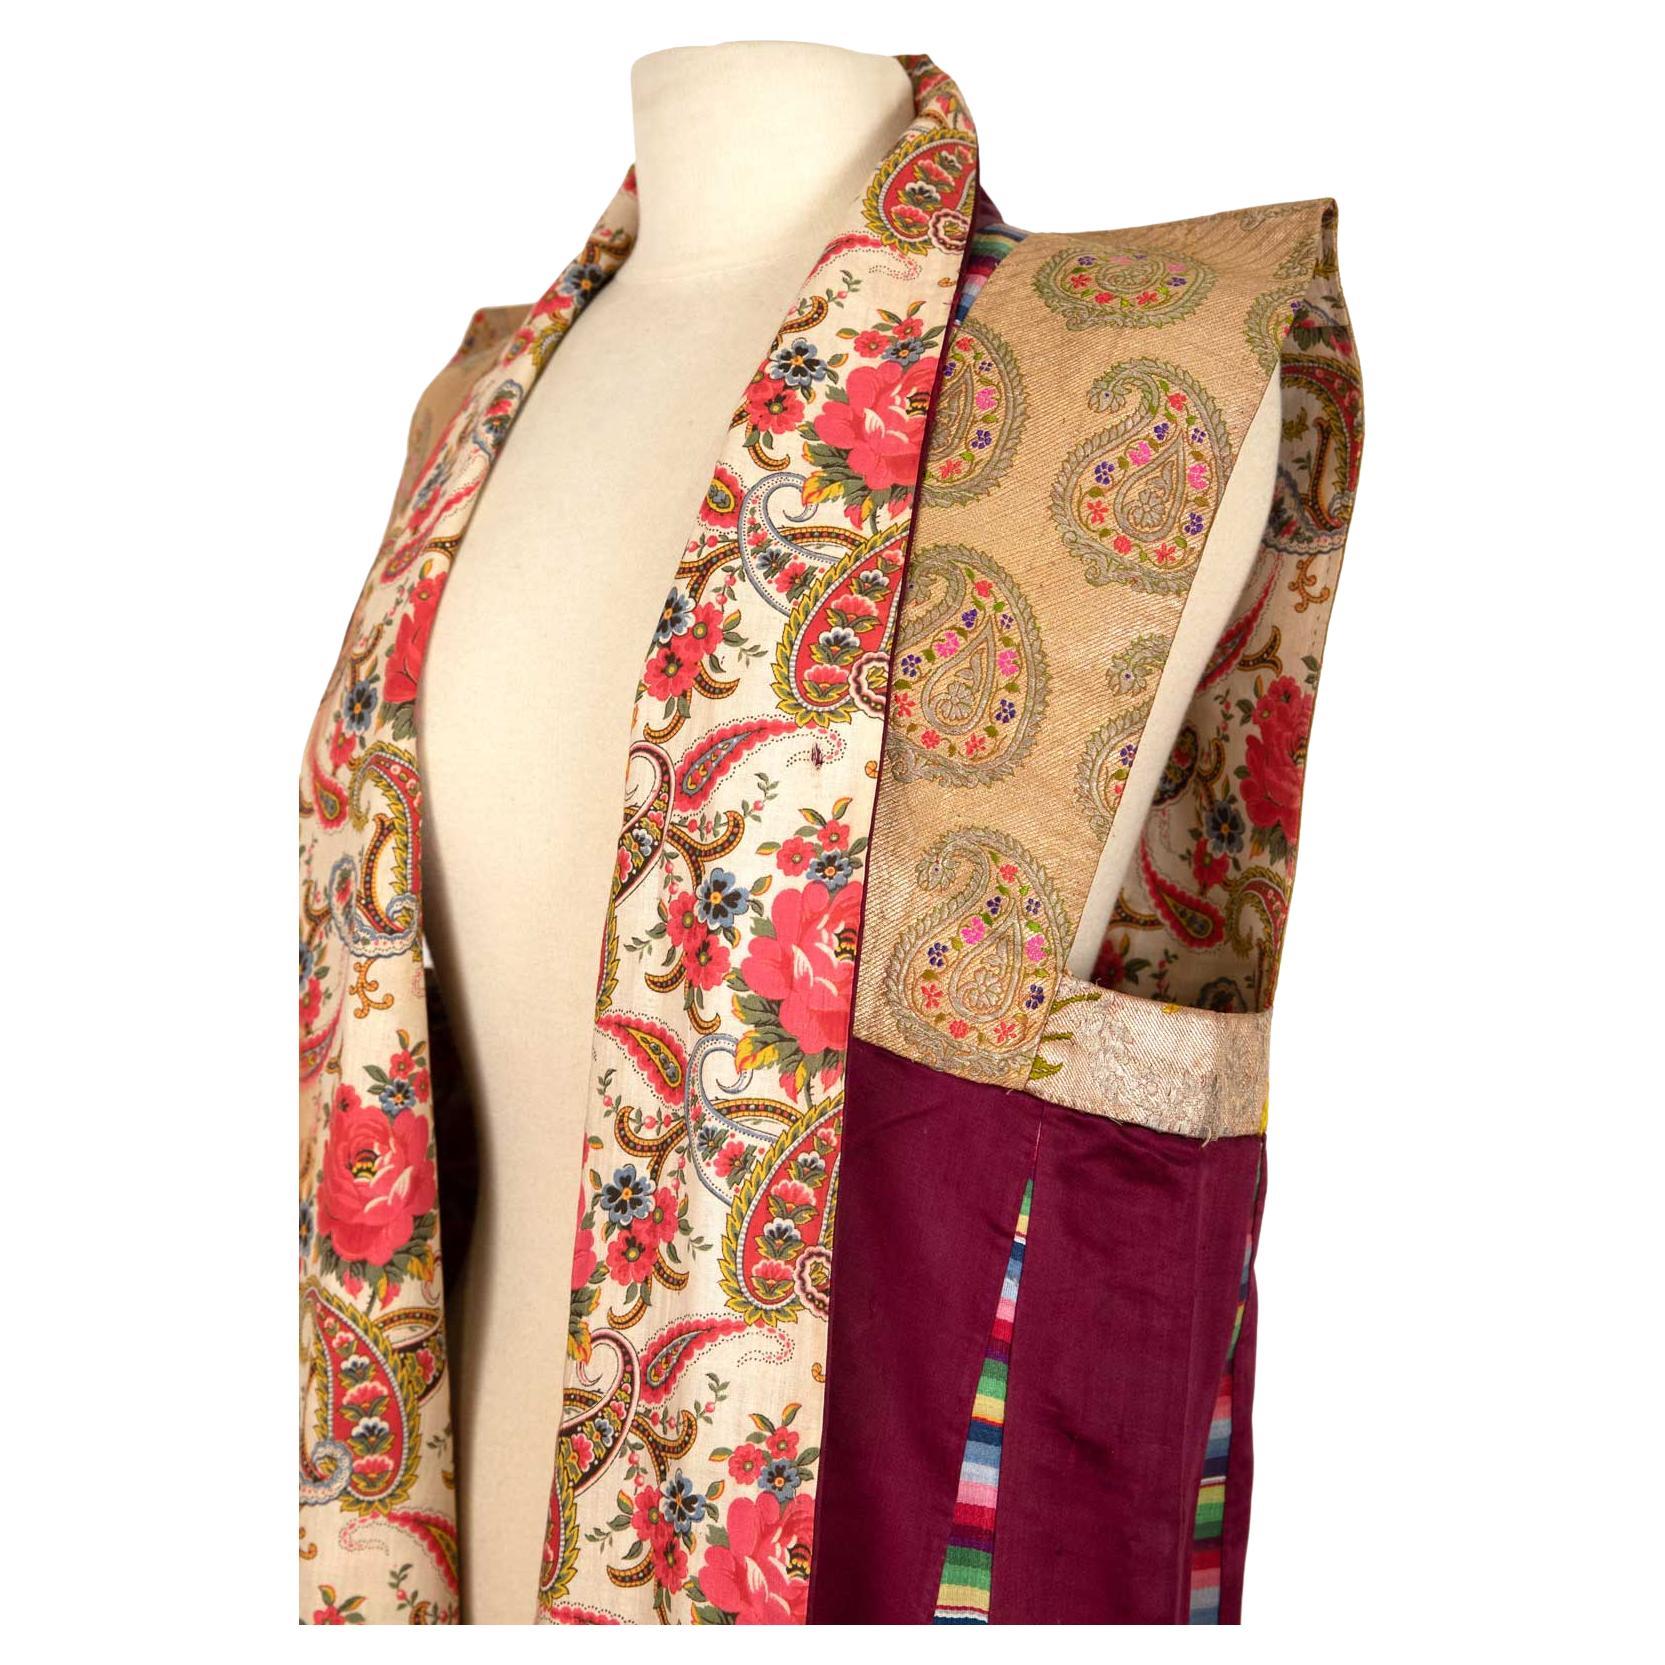 Tibetan Wedding Vest For Sale